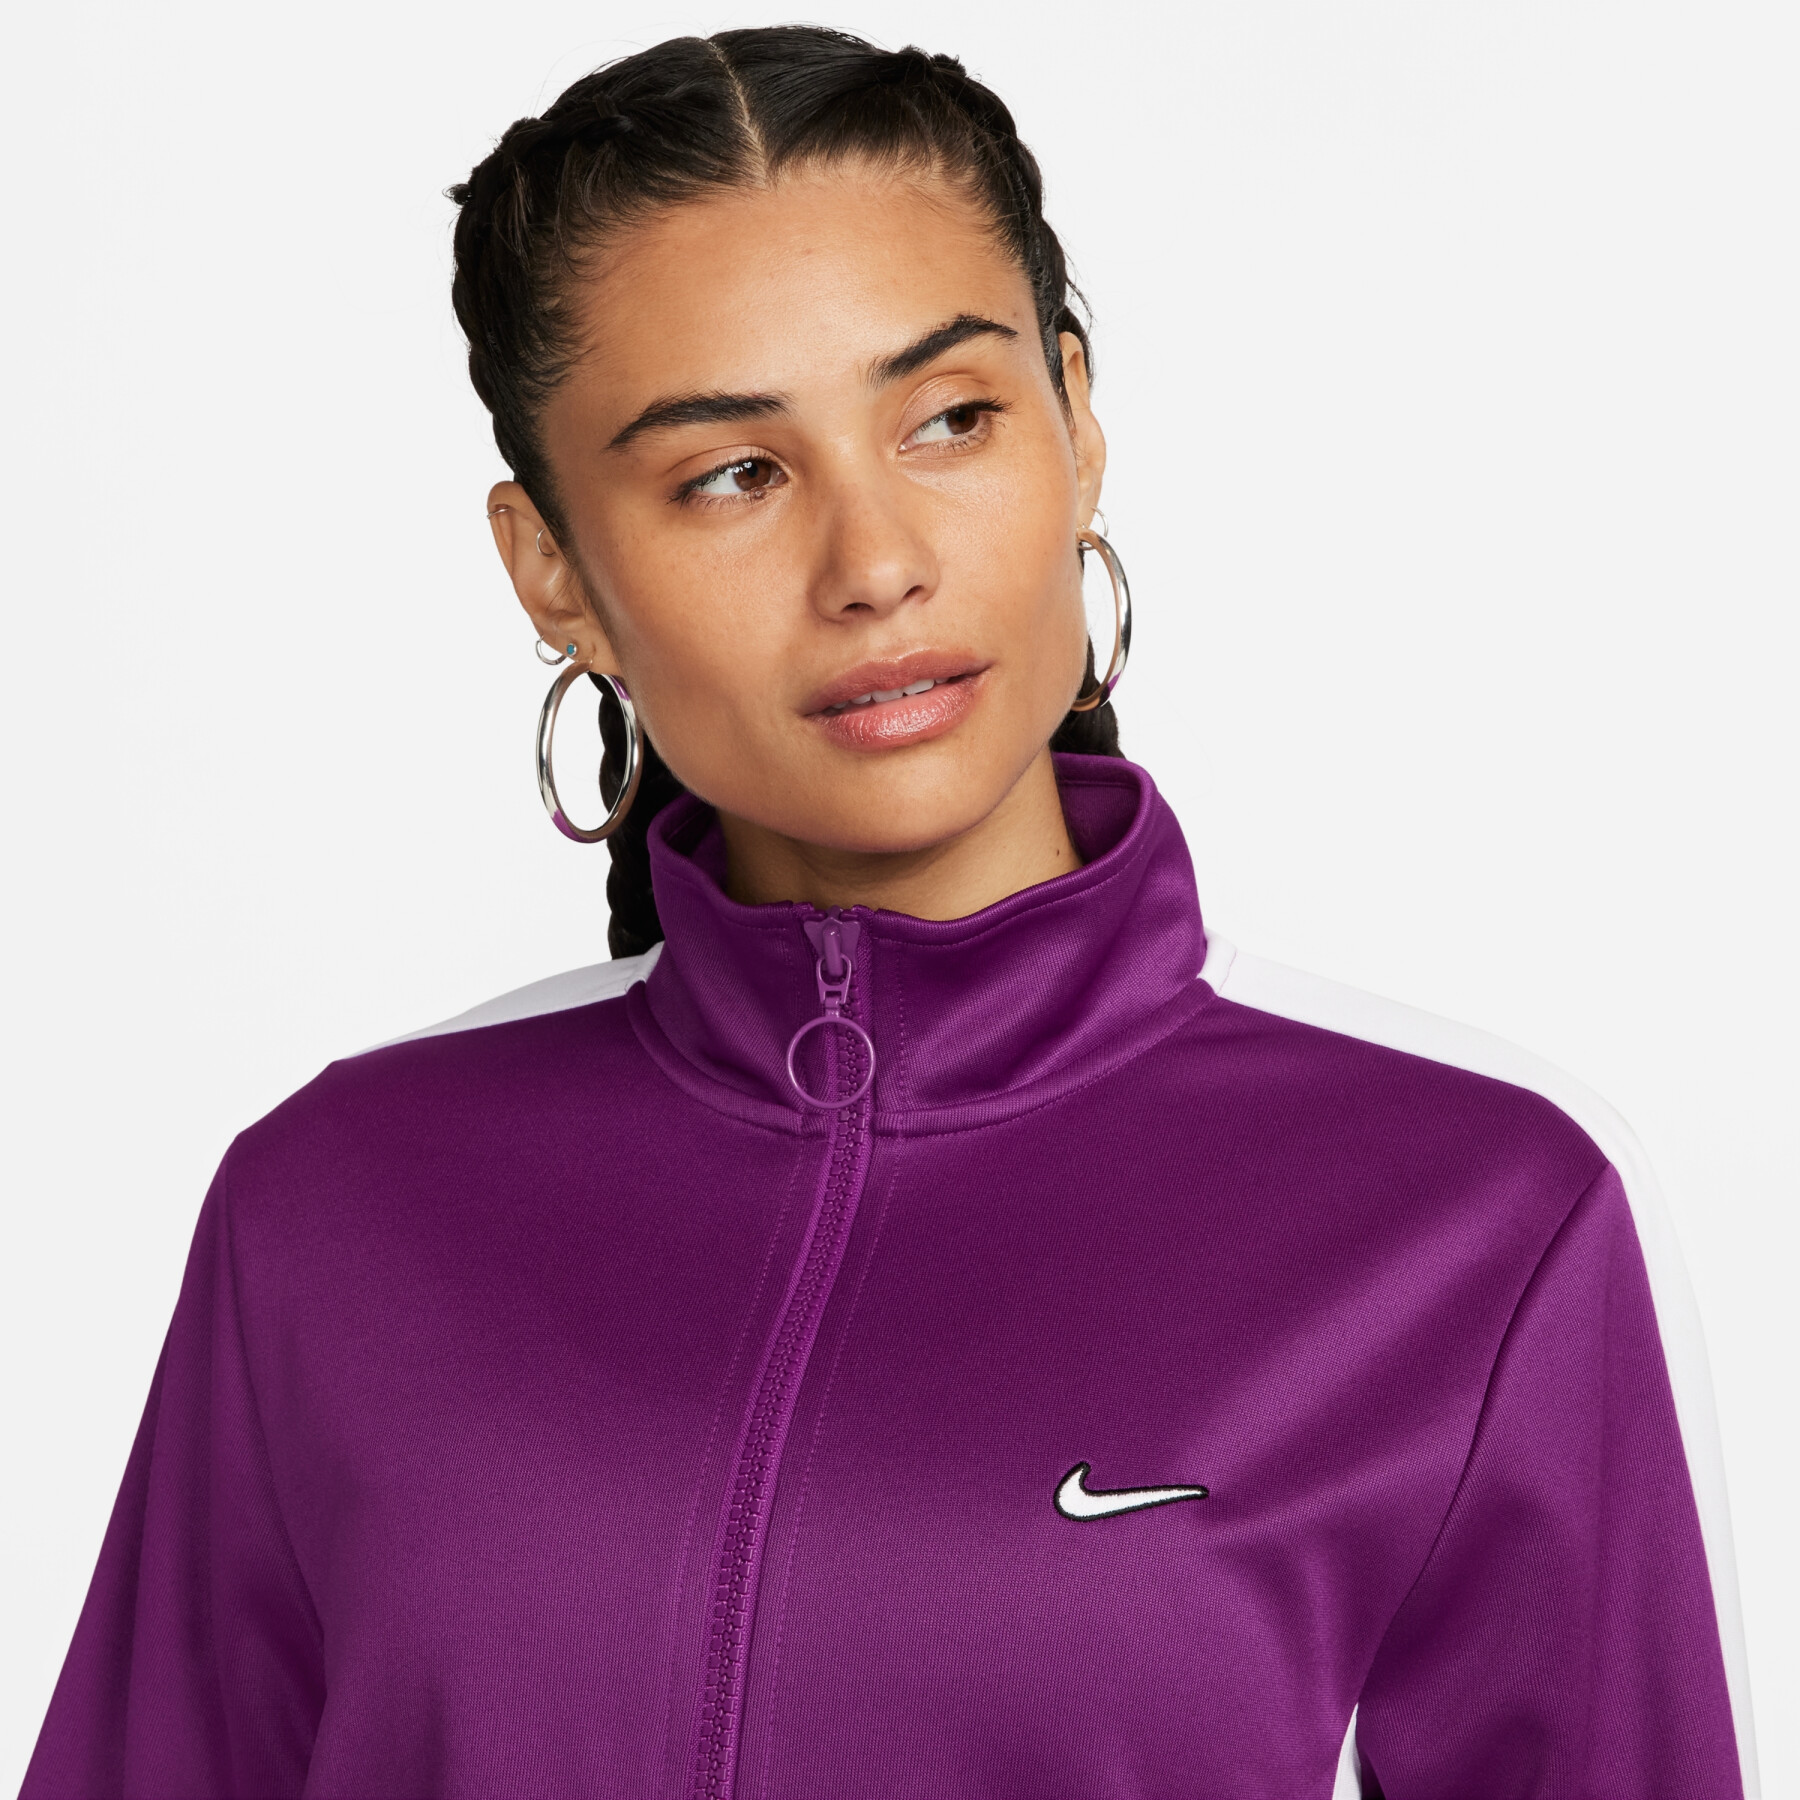 Women's sweat jacket Nike